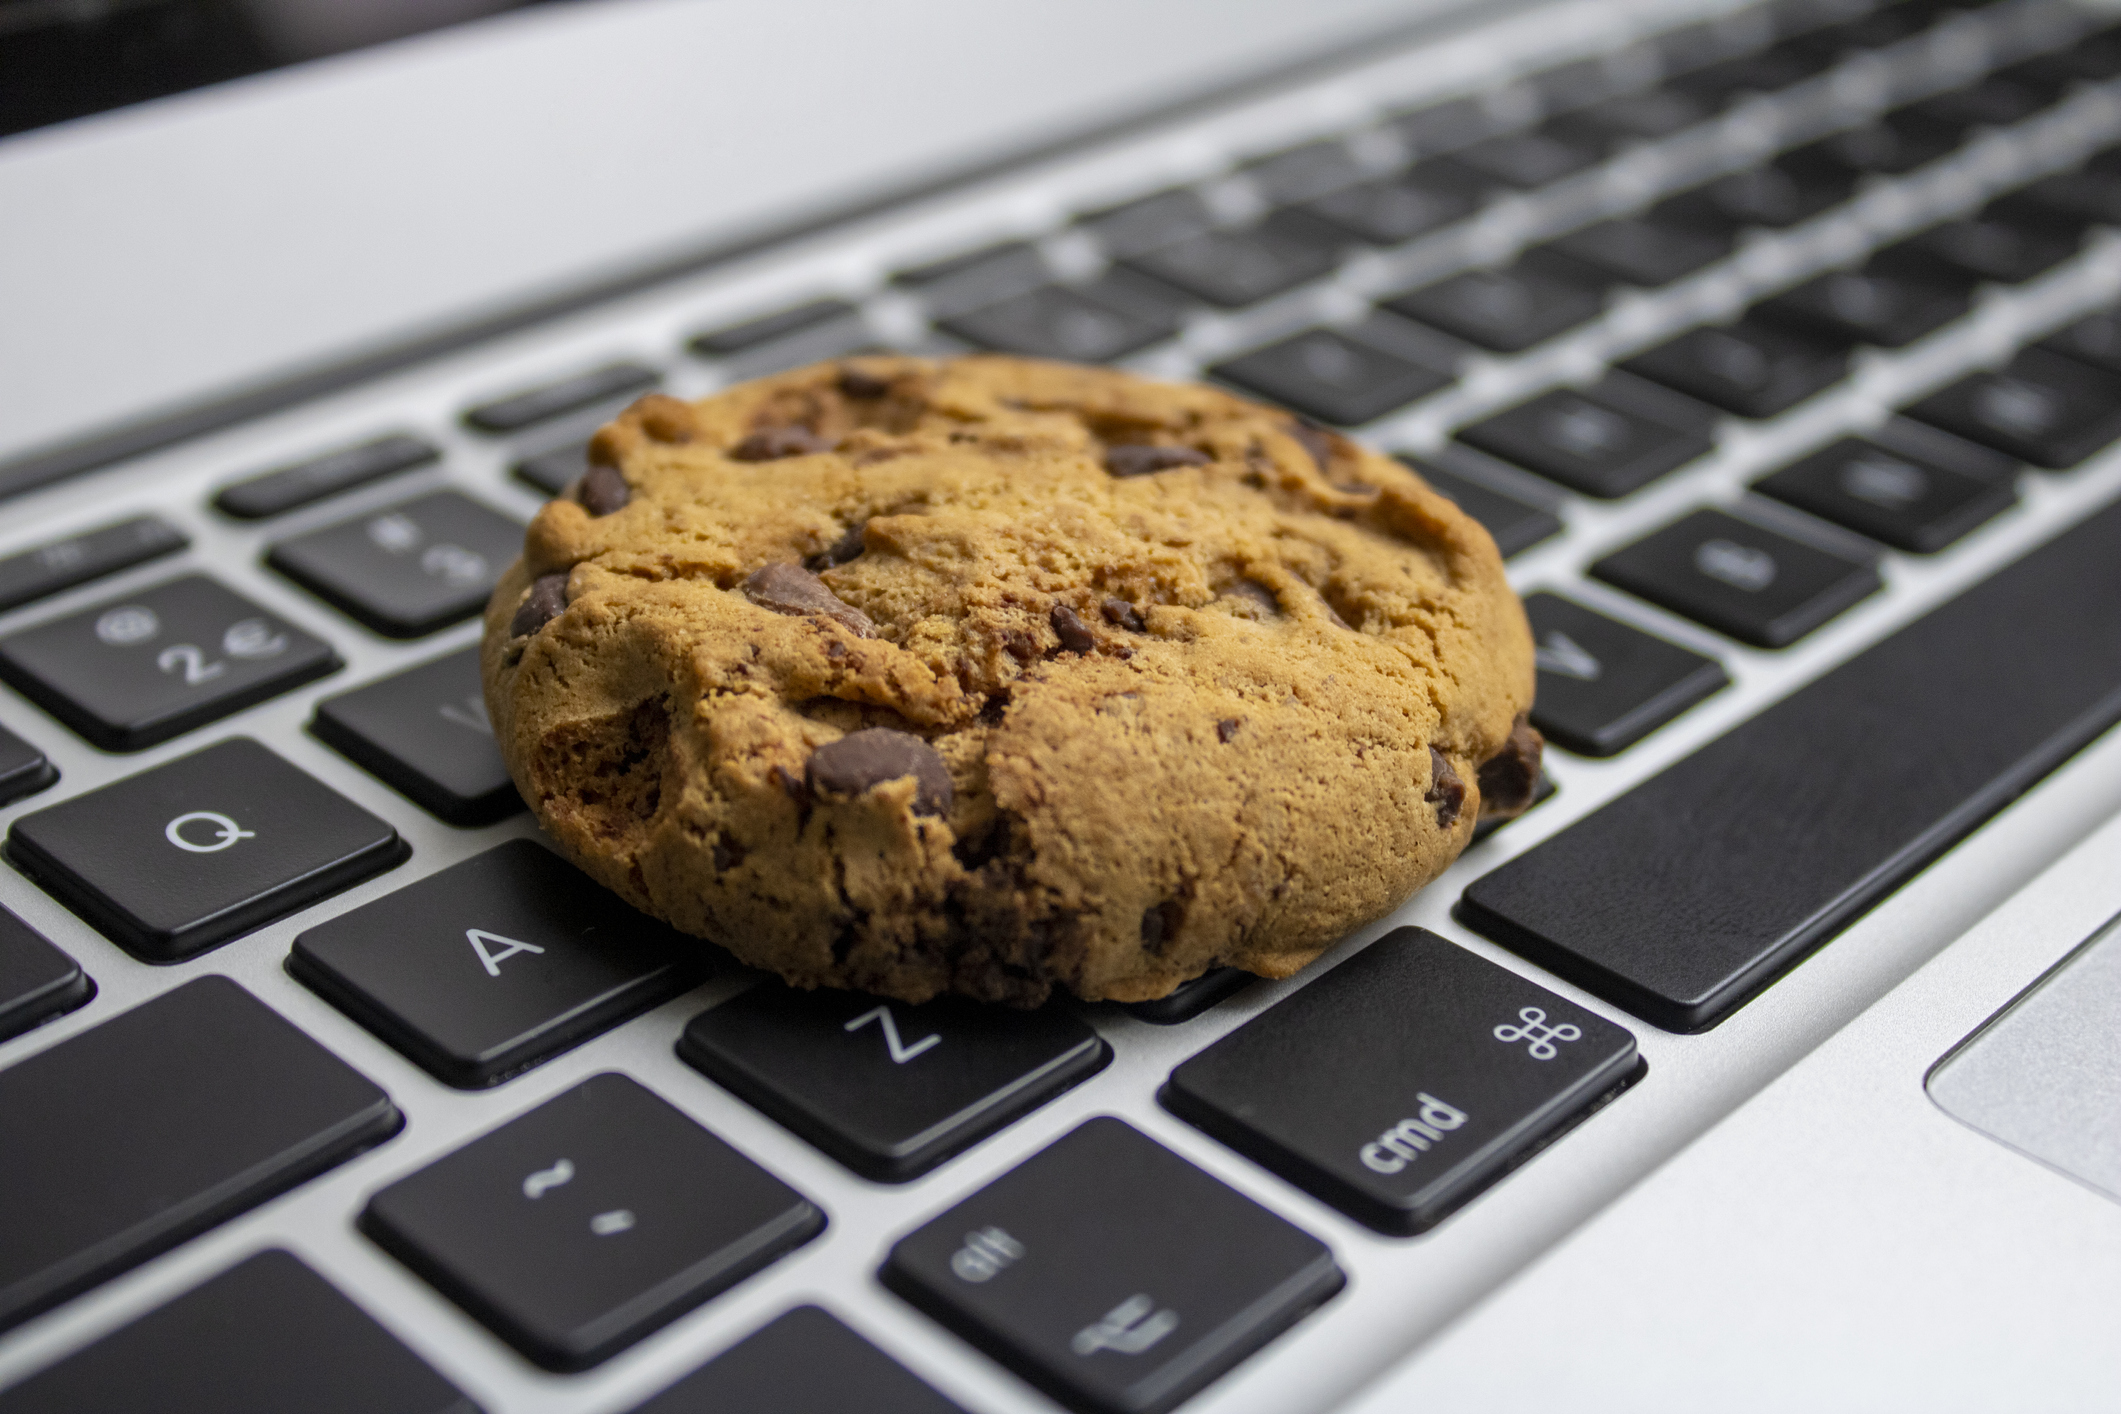 biscoito em cima do teclado do computador, representando o que são cookies de internet